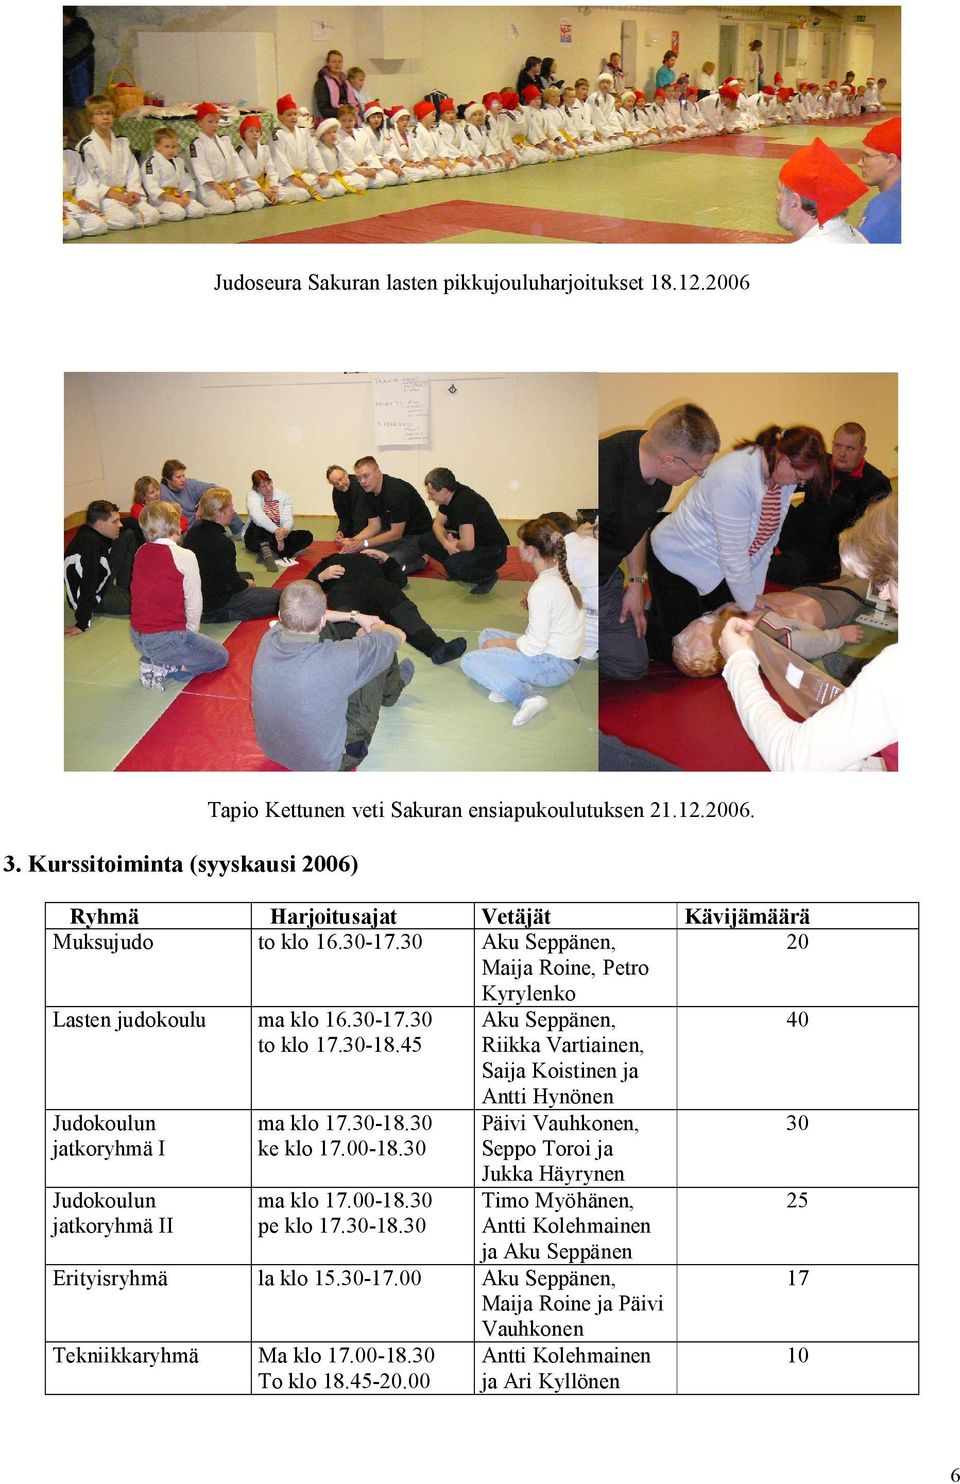 45 Aku Seppänen, Riikka Vartiainen, Saija Koistinen ja 40 Judokoulun jatkoryhmä I Judokoulun jatkoryhmä II ma klo 17.30 18.